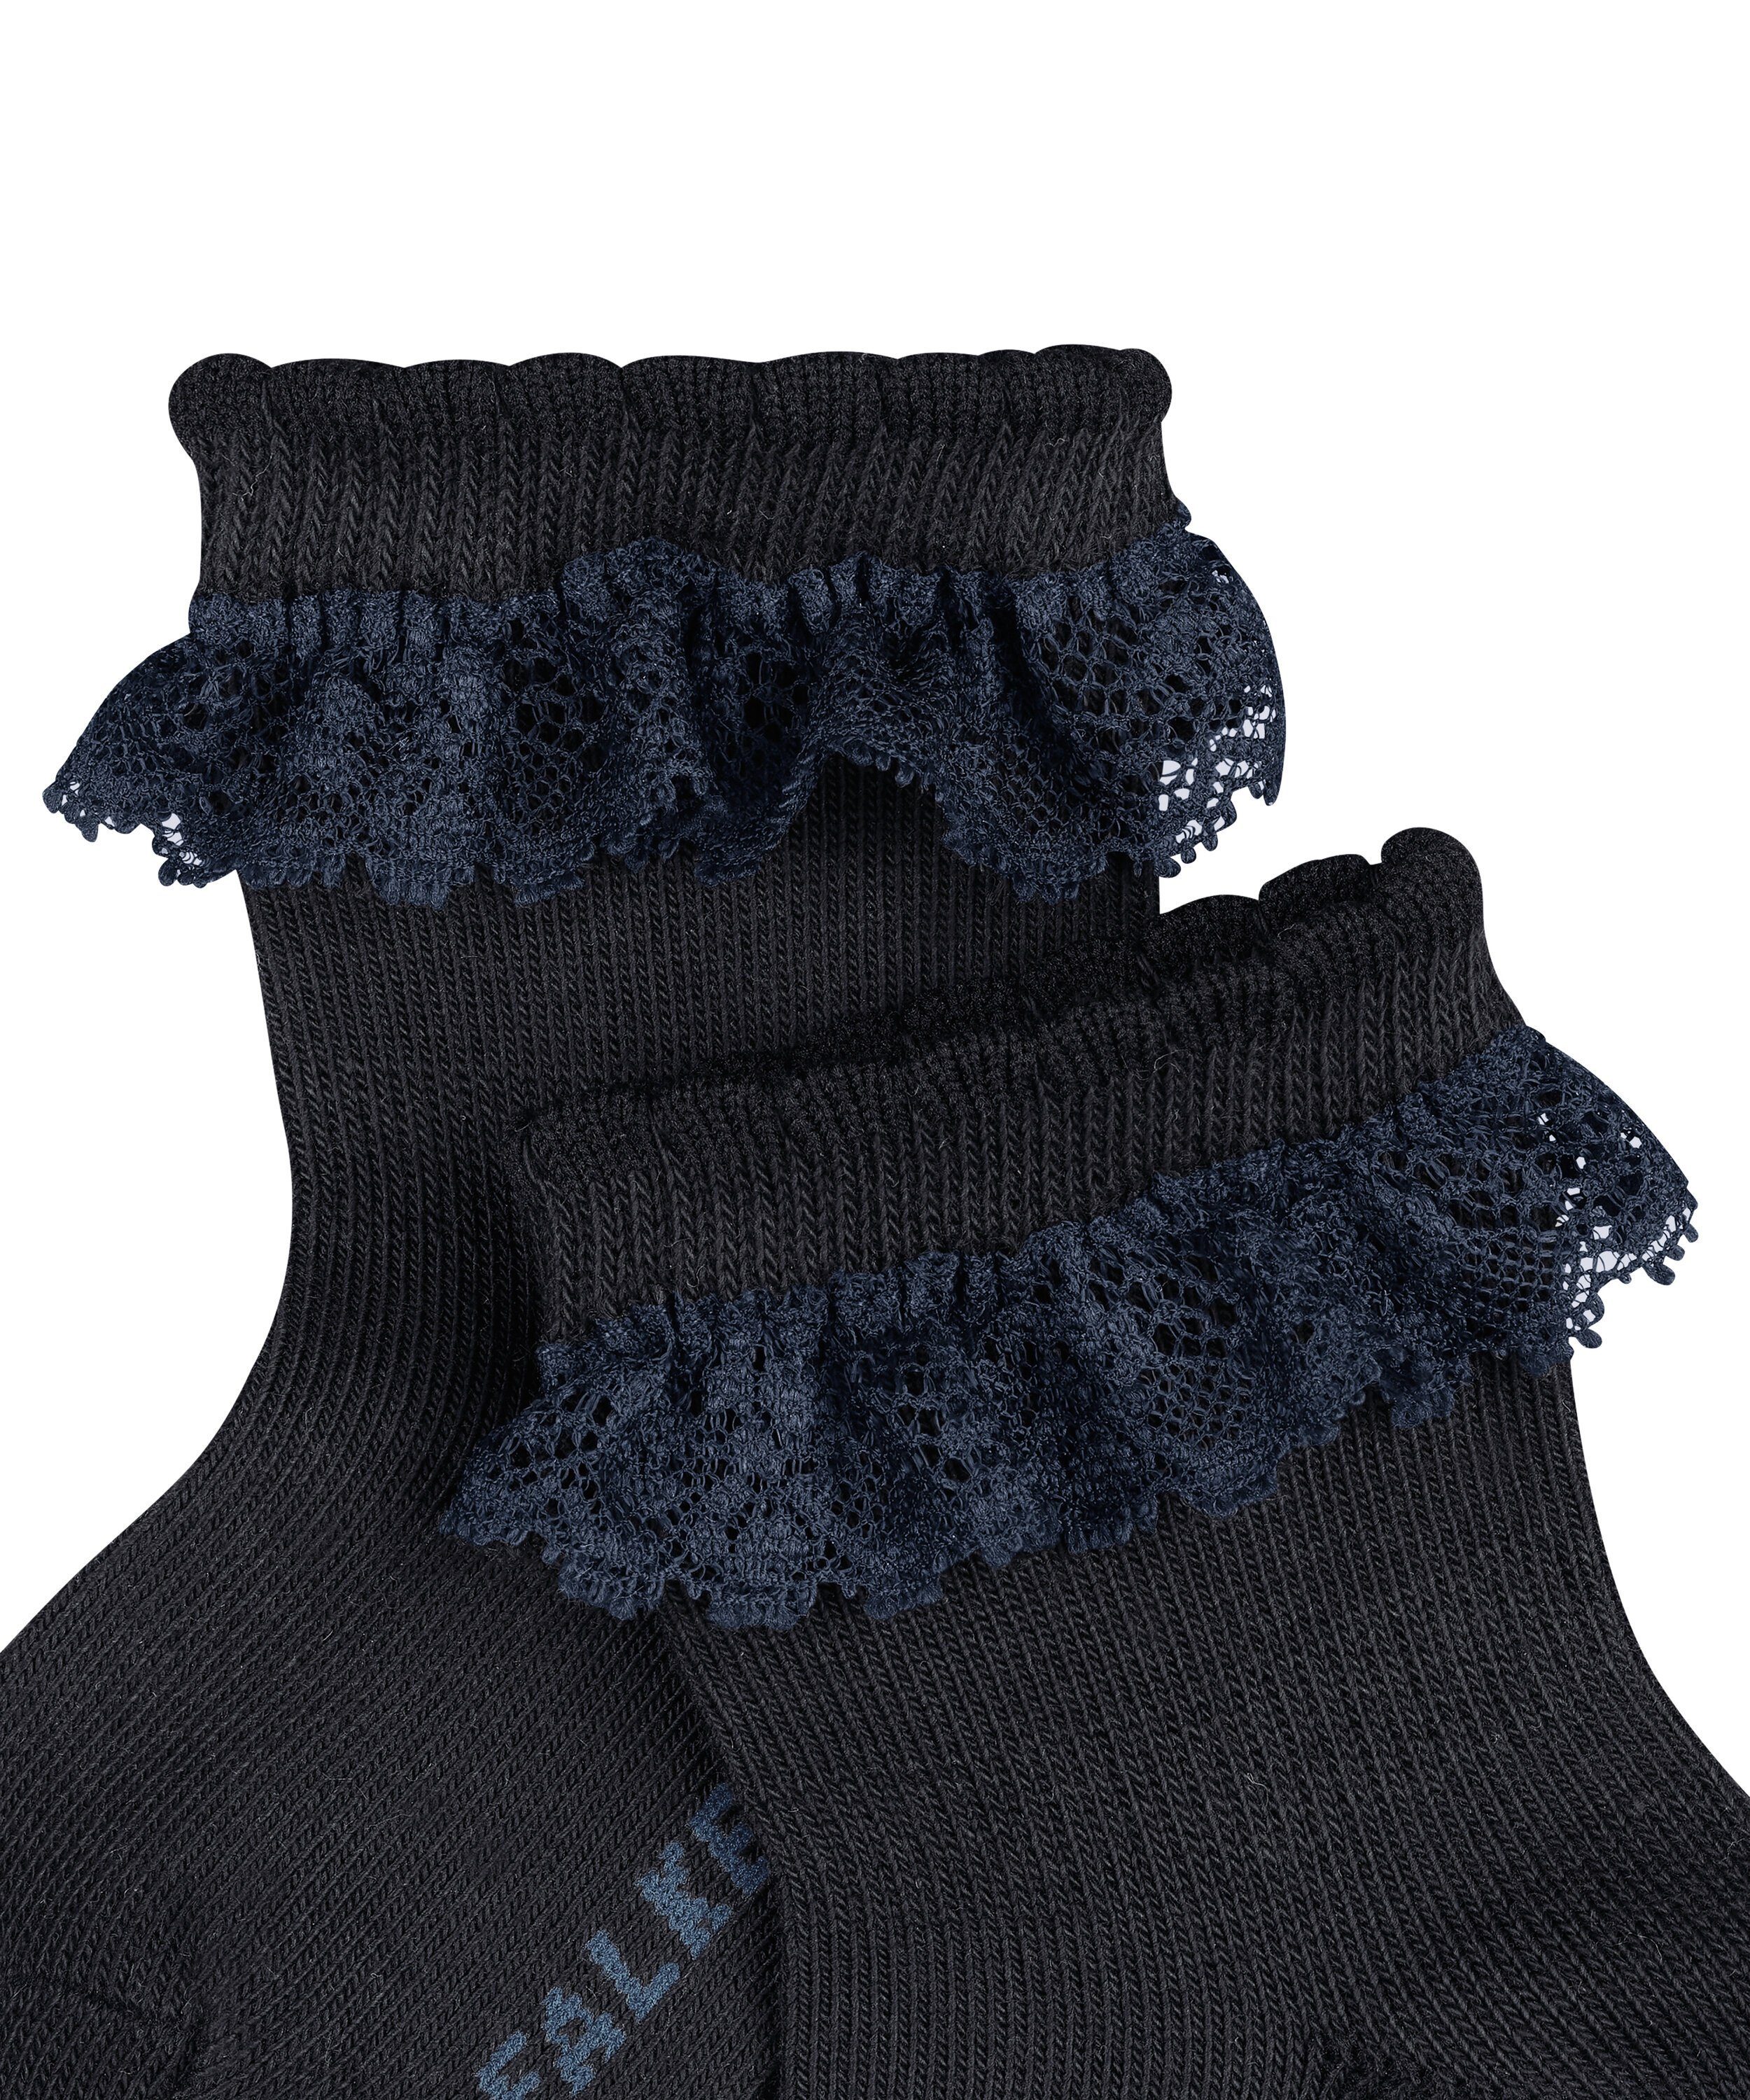 navy dark FALKE Romantic (1-Paar) (6370) Lace Socken